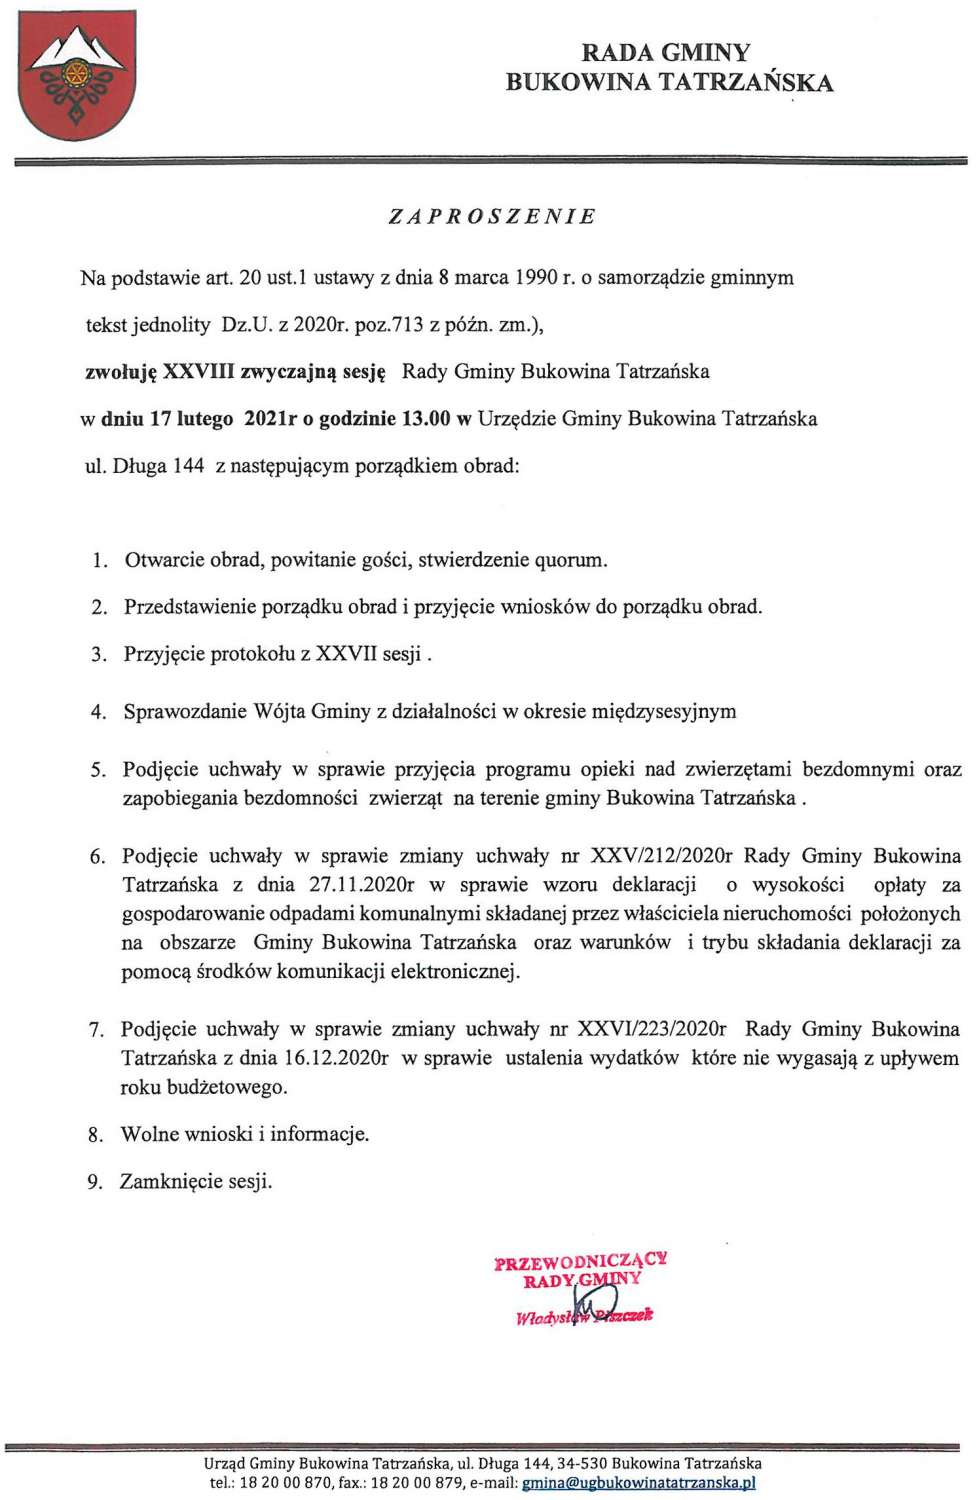 XXVIII zwyczajna sesja Rady Gminy Bukowina Tatrzańska w dniu 17 lutego 2021 - ZAPROSZENIE